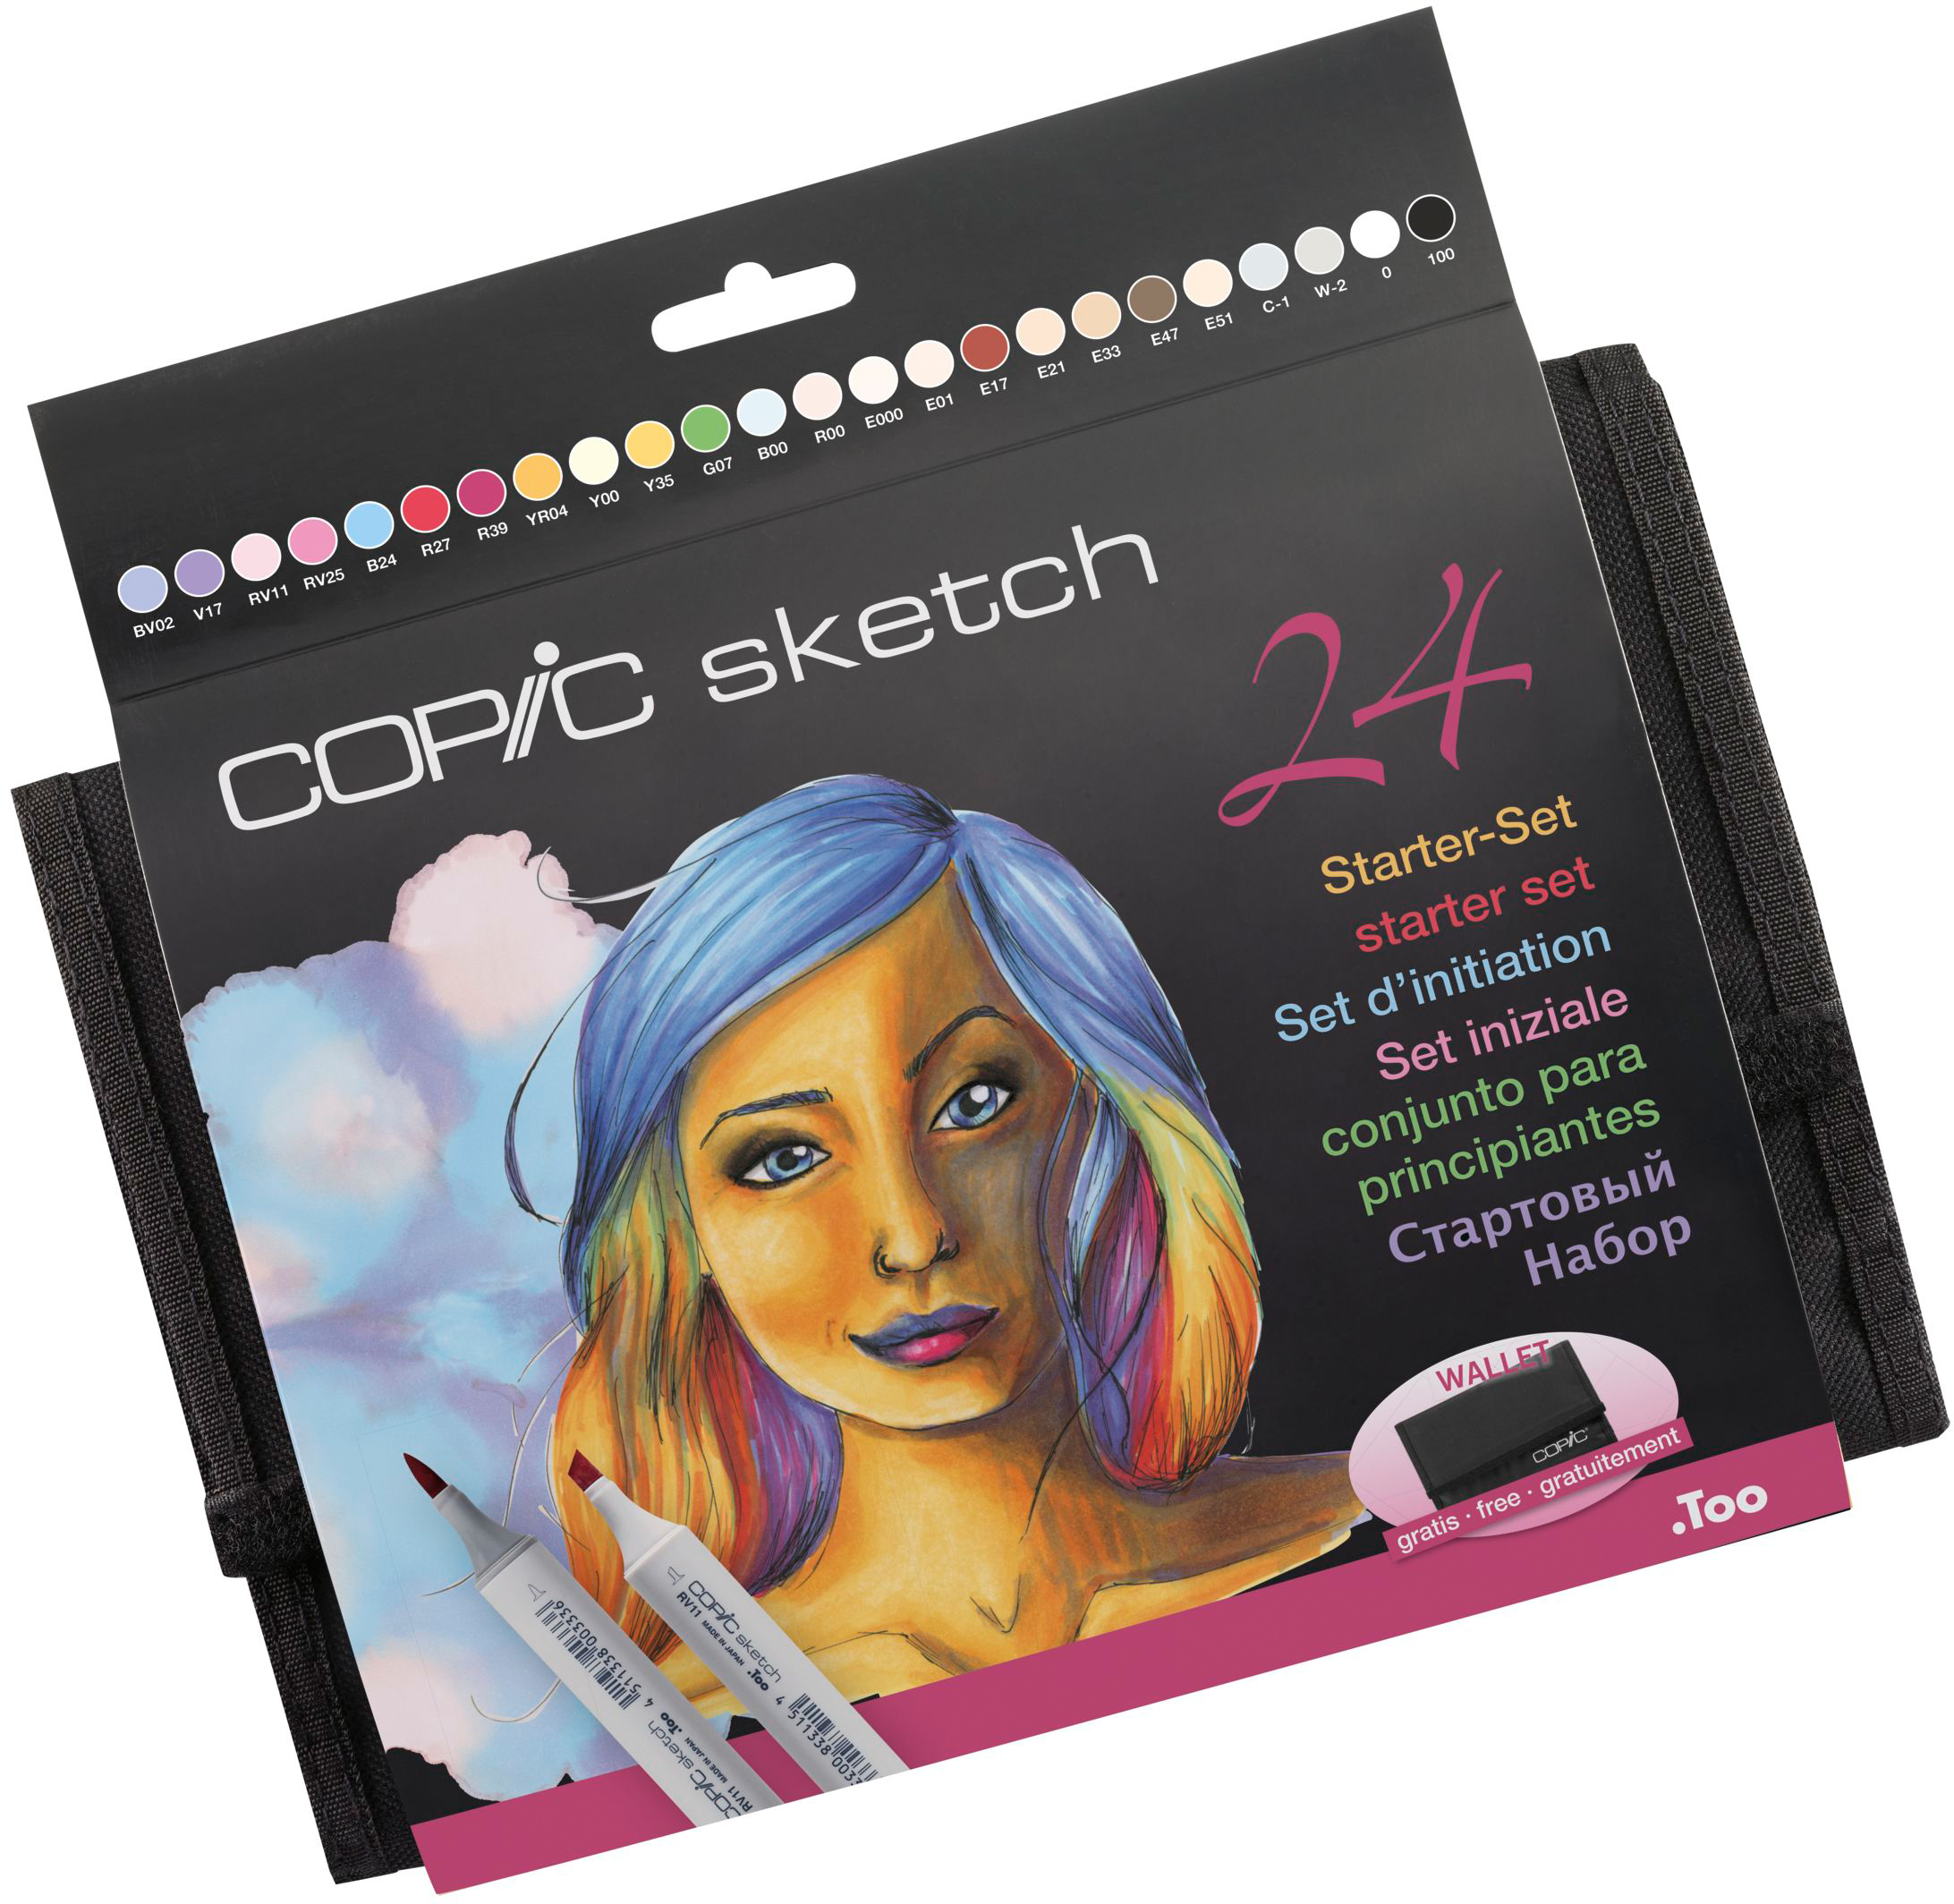 COPIC Marker Sketch 21075424 Wallet Starter-Set, 24 pcs.